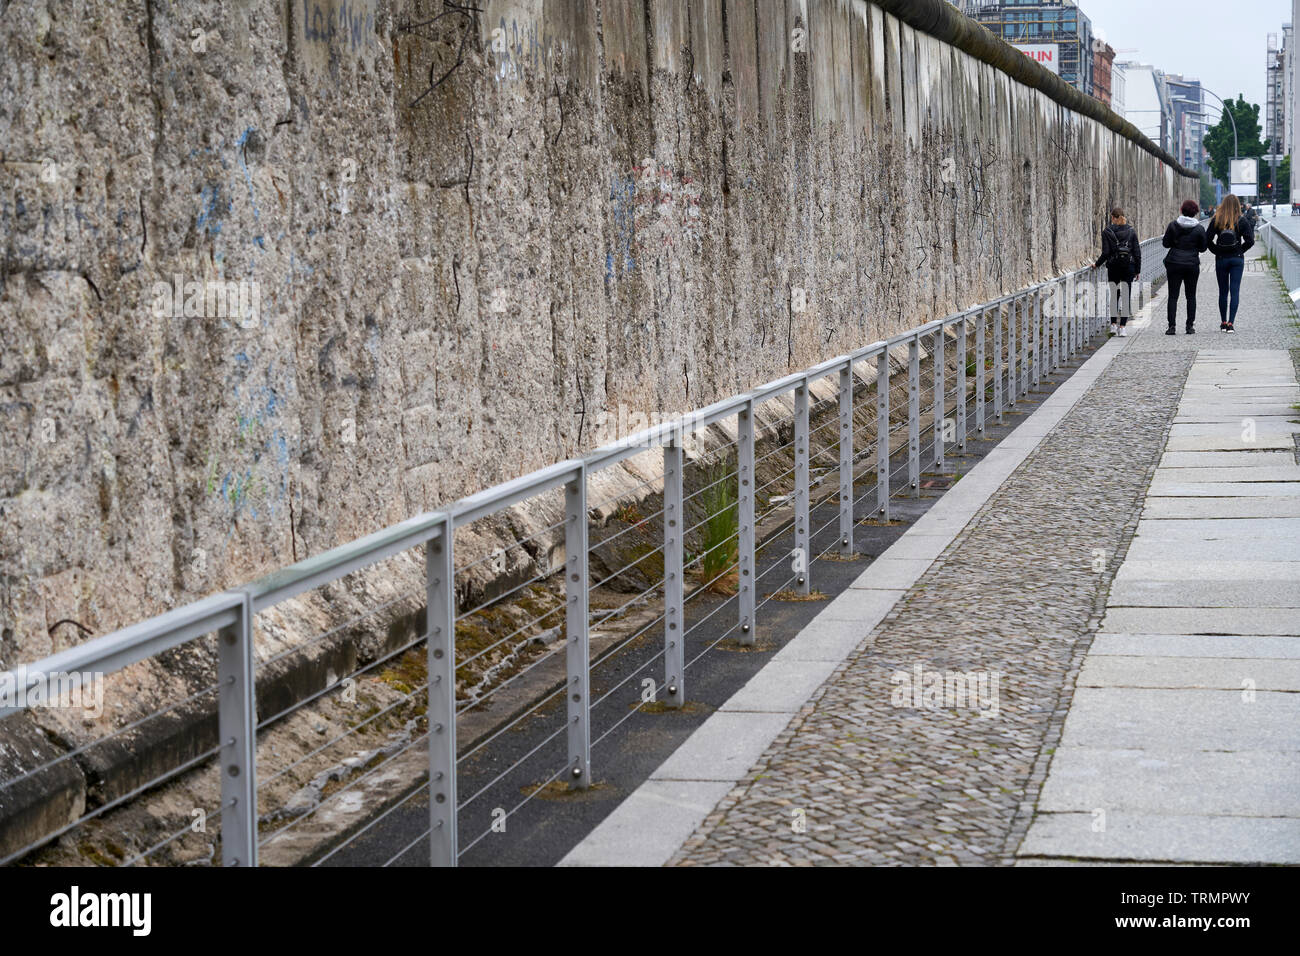 Ein Teil der Berliner Mauer neben der Ausstellung "Topographie des Terrors", eine Ausstellung über den Nationalsozialismus im Zweiten Weltkrieg. Stockfoto